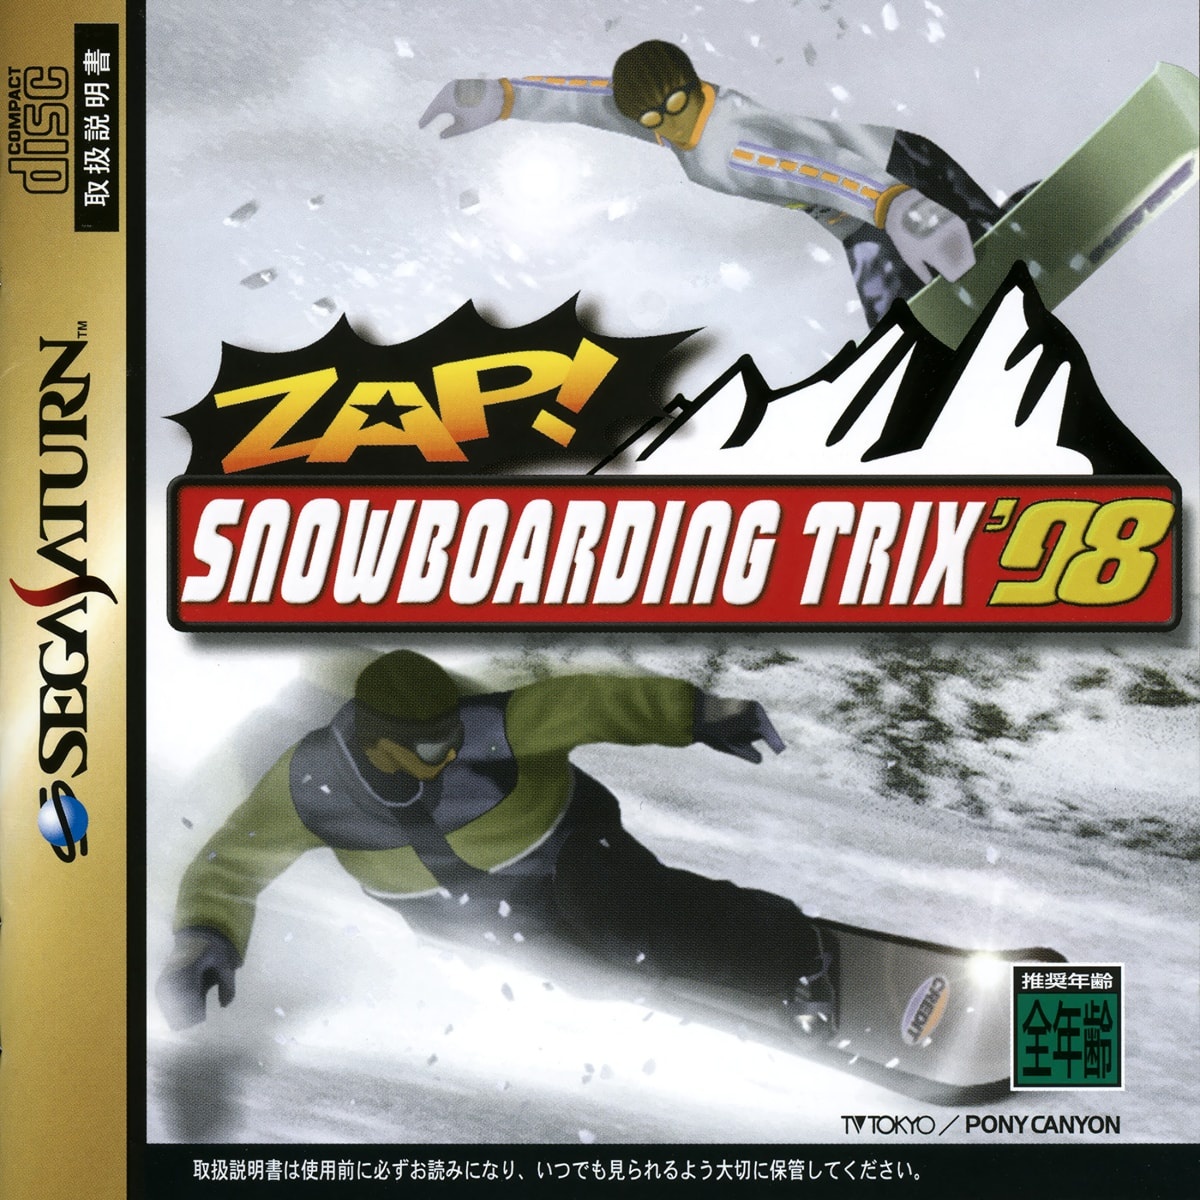 Capa do jogo Zap! Snowboarding Trix 98